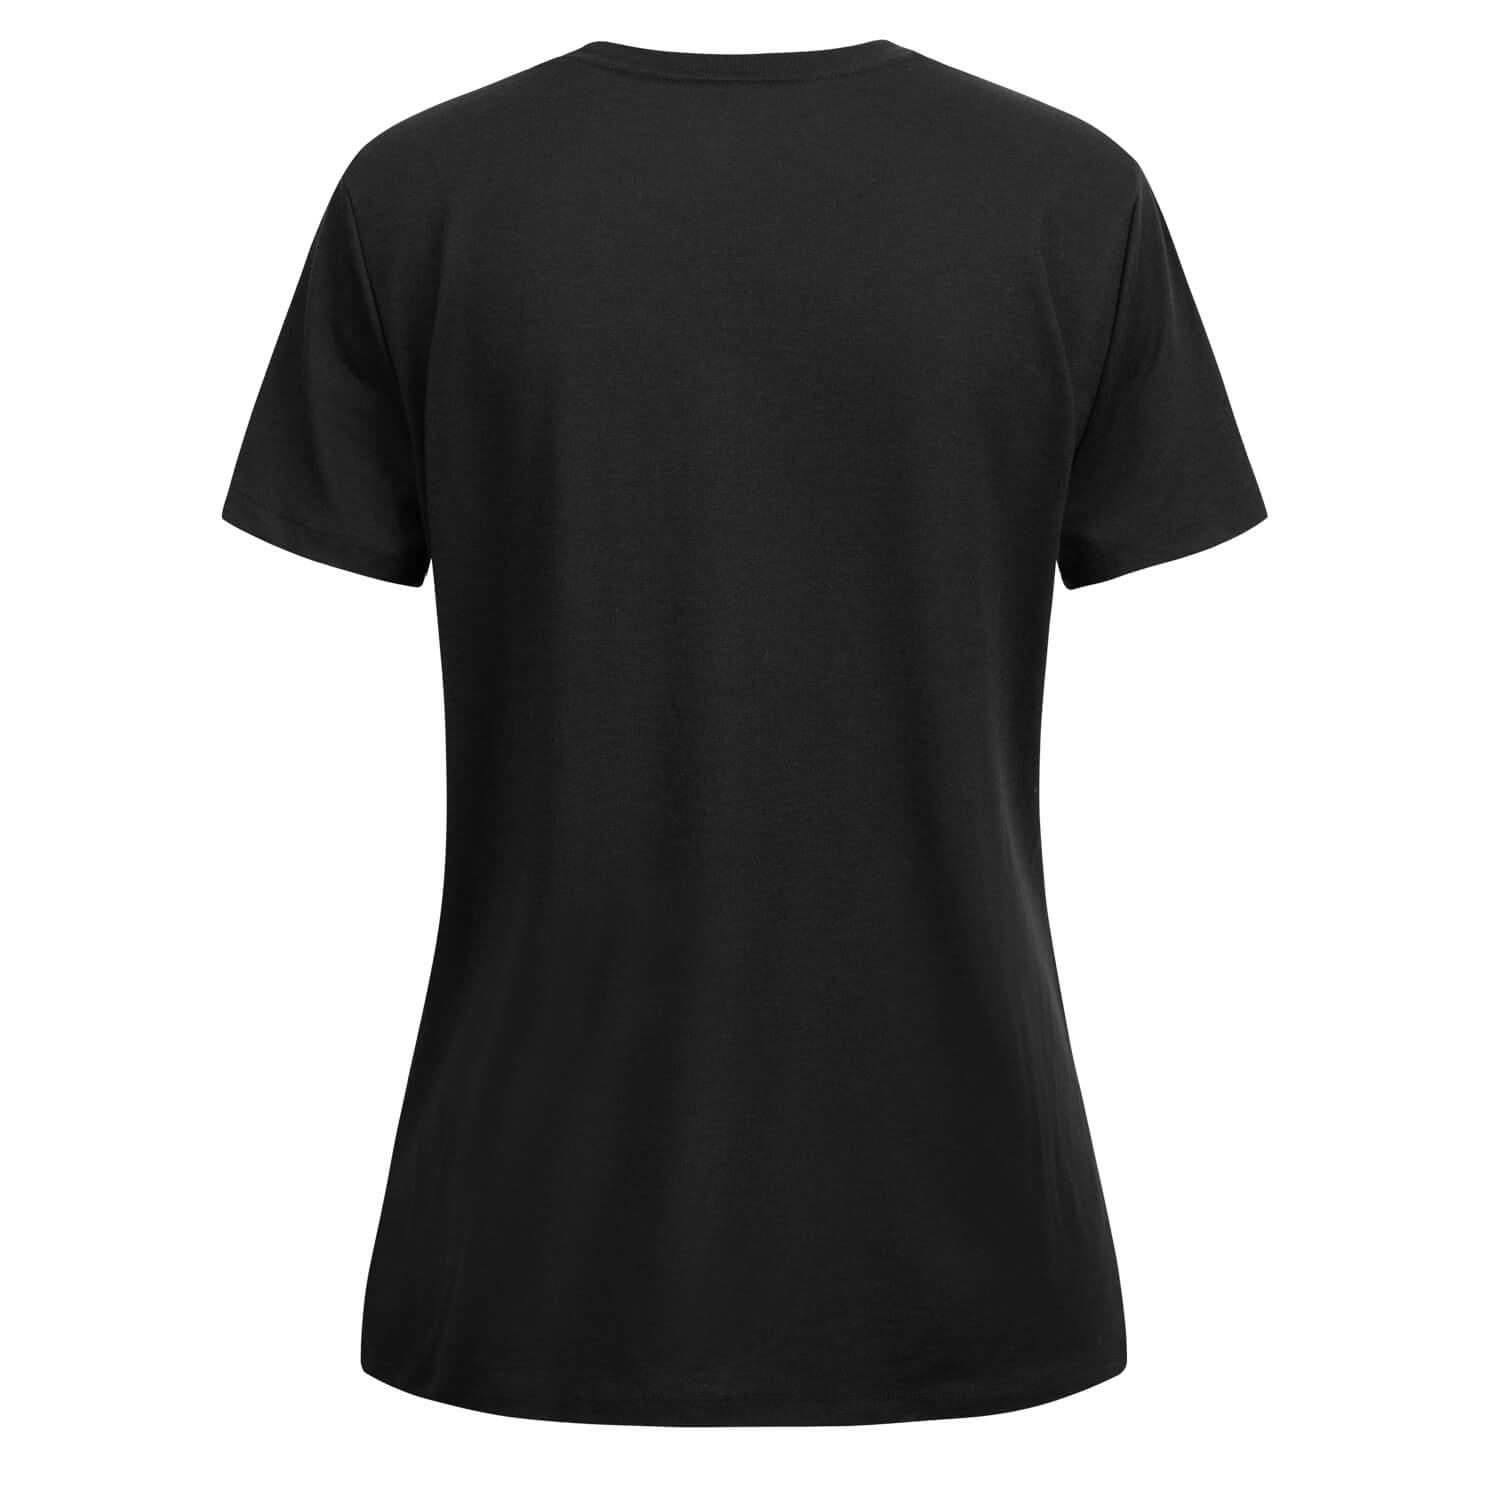 Bild 2: Nike Damen T-Shirt Swoosh schwarz